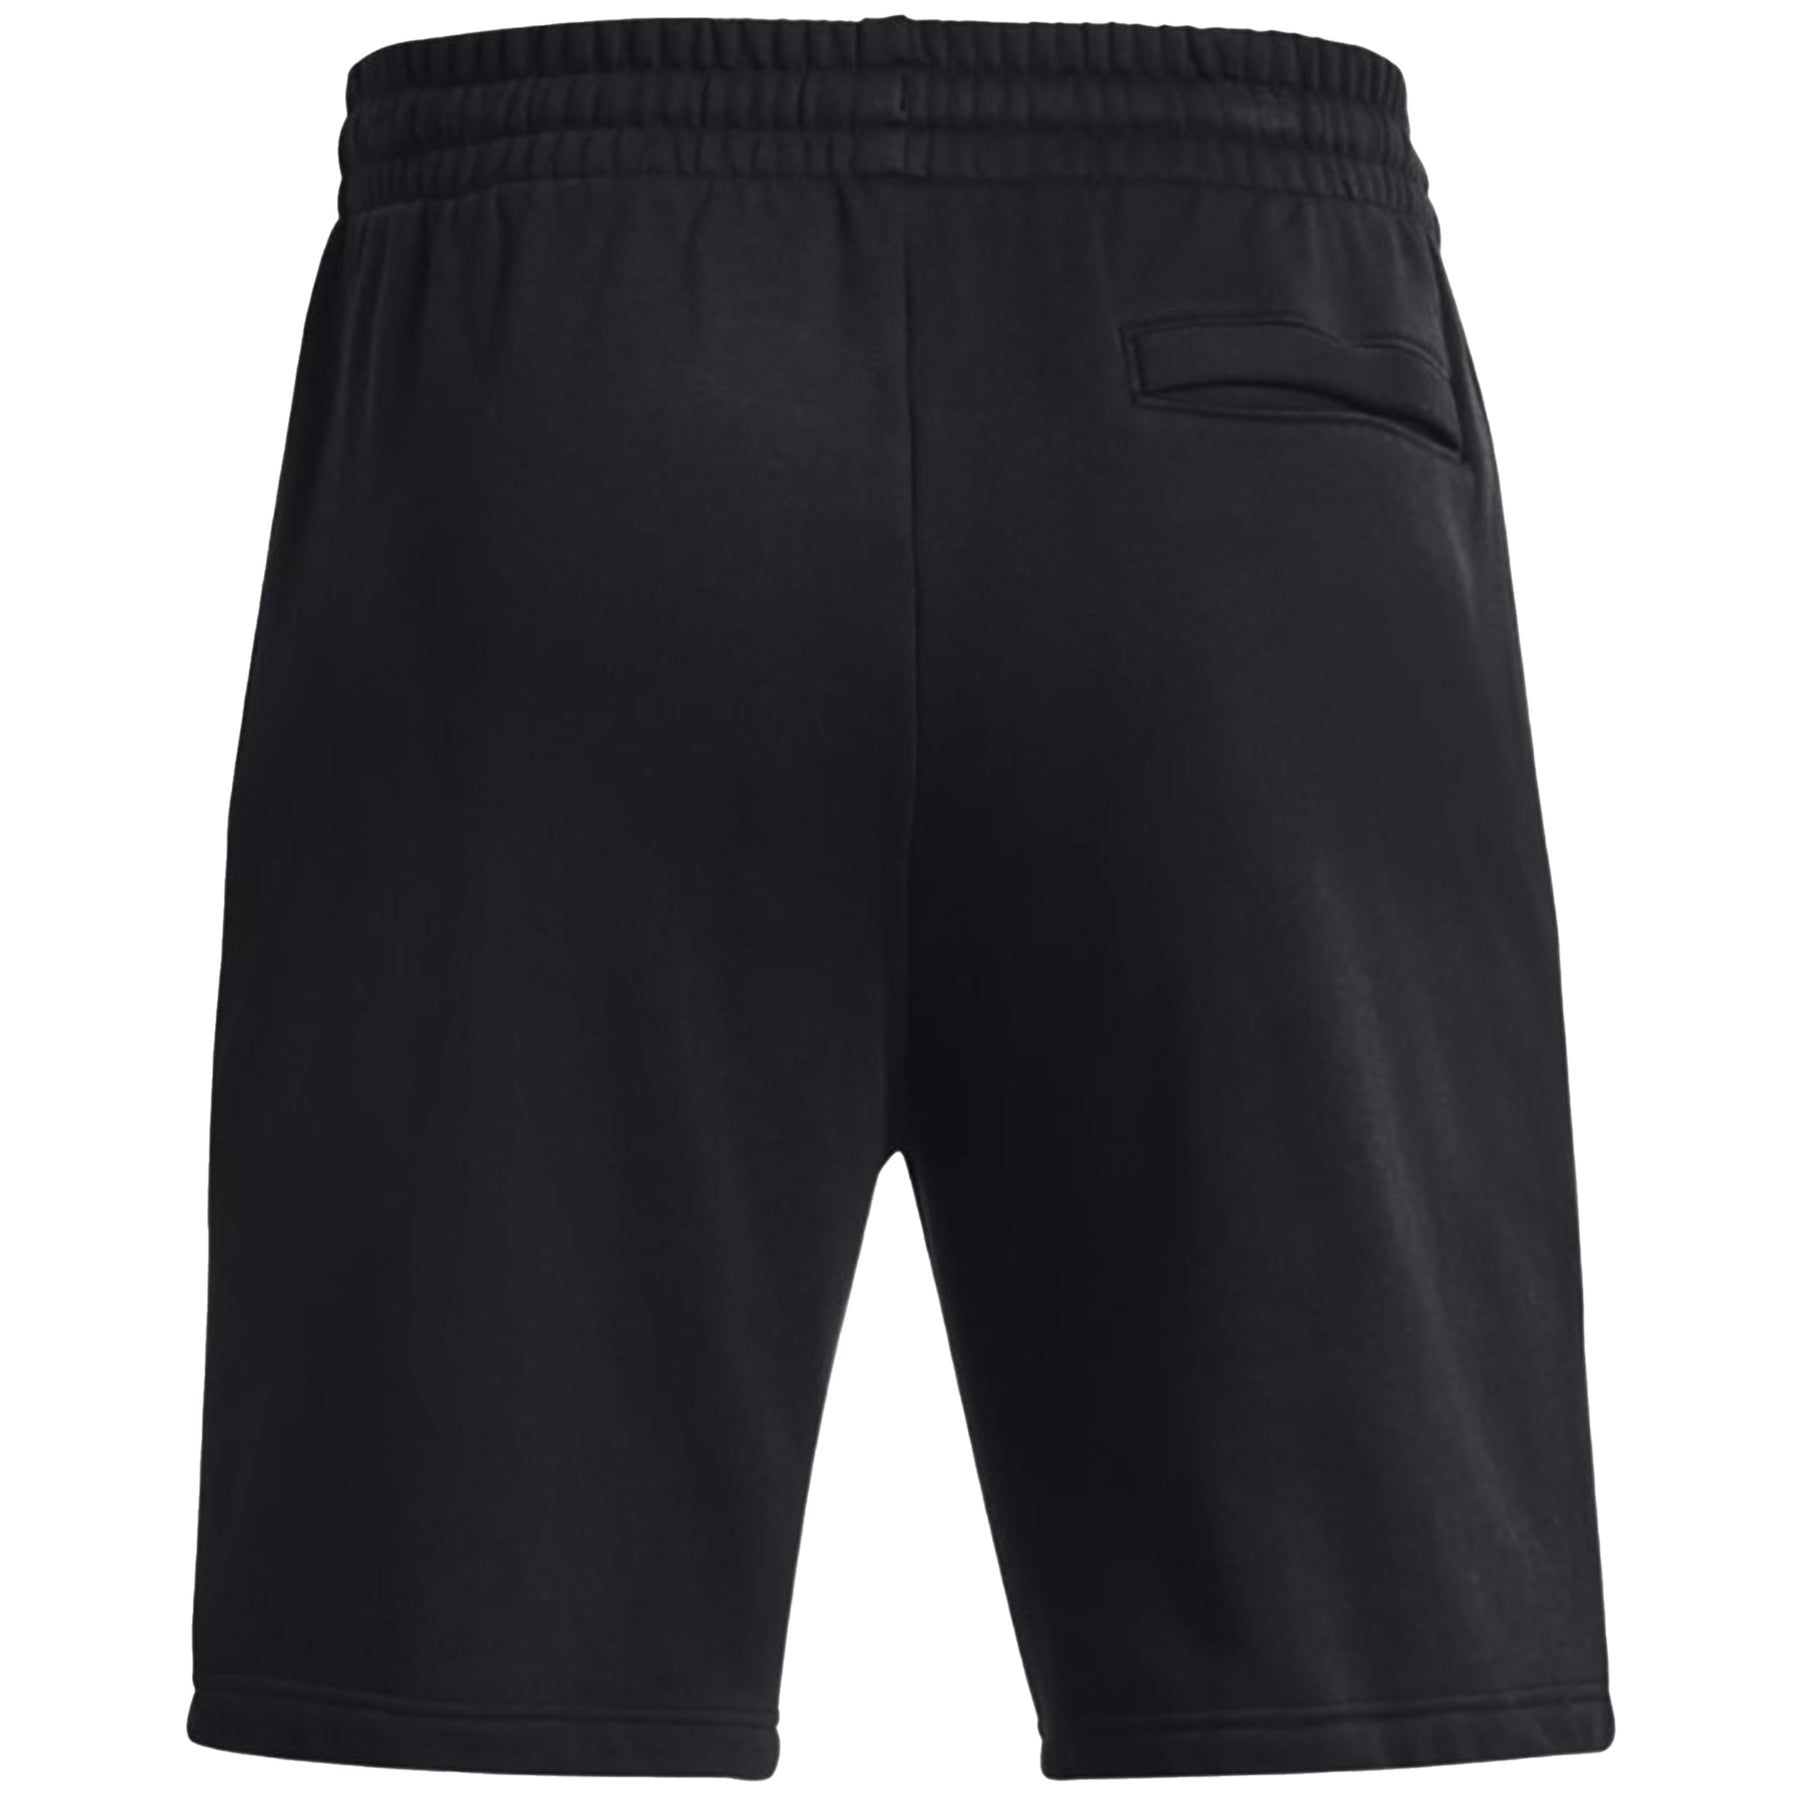 Under Armour Rival Fleece Shorts: Black